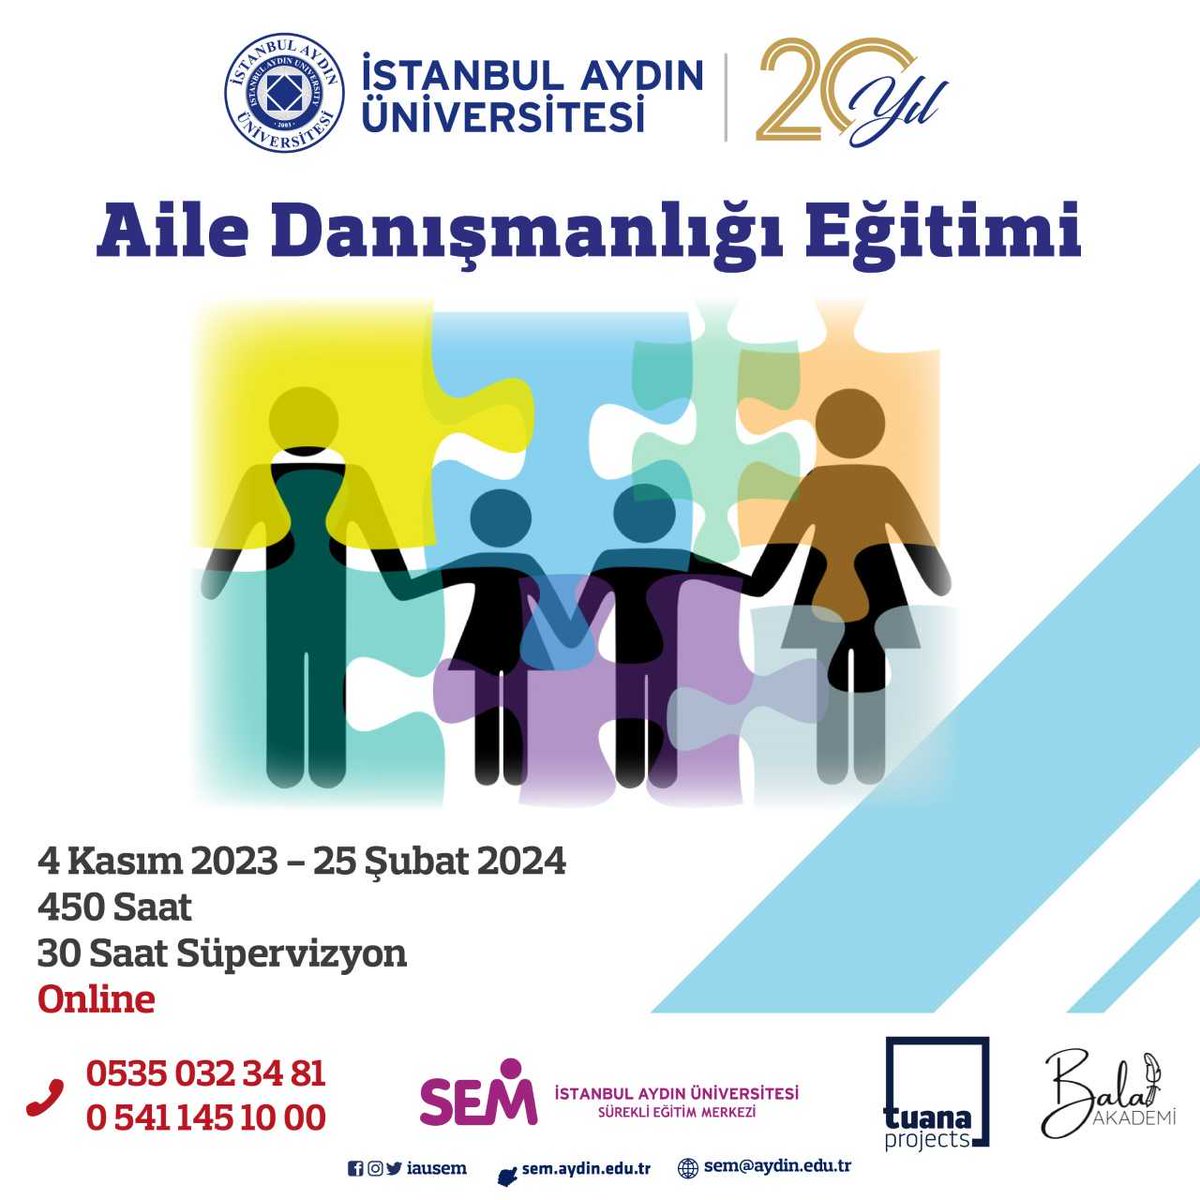 📢Aile Danışmanlığı eğitimimiz 5 Kasım’da başlıyor! 📌Çevrimiçi-canlı yürüteceğimiz eğitimle,Türkiye’nin farklı kentlerinde 'Aile Danışmanı ' yetiştirmeyi hedefliyoruz. 👉 Detaylı bilgi: bit.ly/3LEmmop @IAUKampus @TuanaProjects @balatakademi #ailedanışmanı